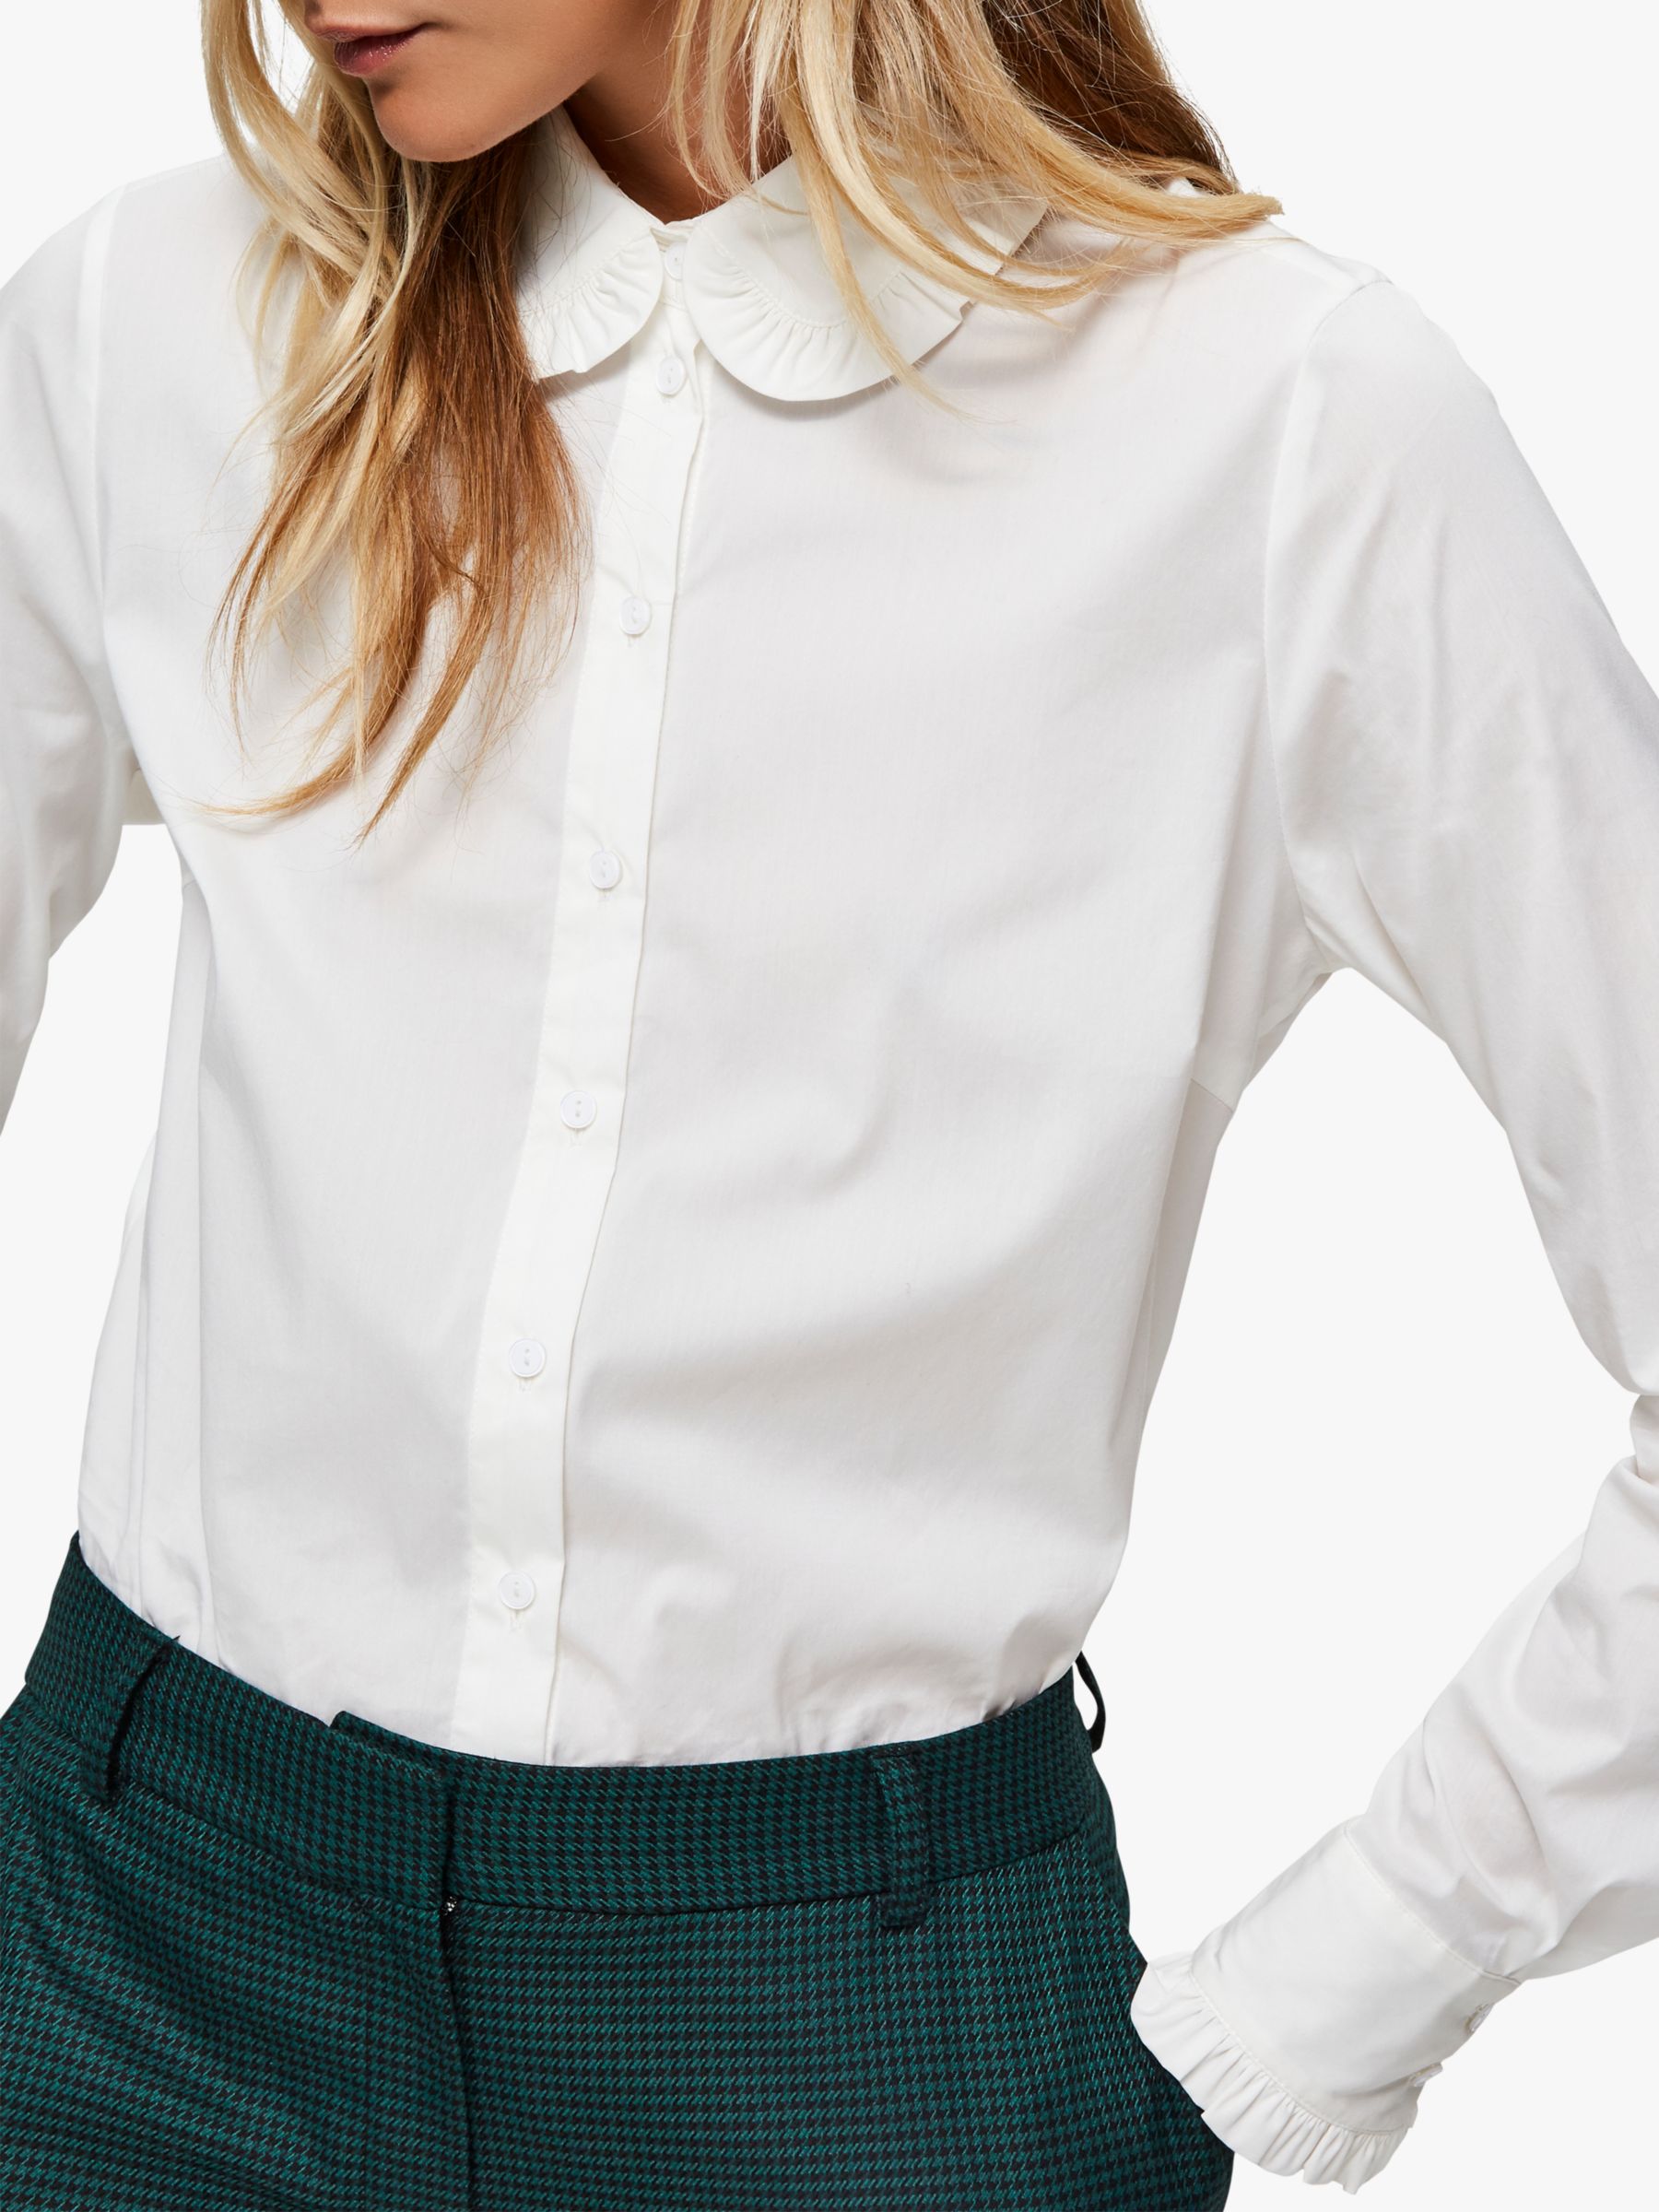 white shirt ruffle collar